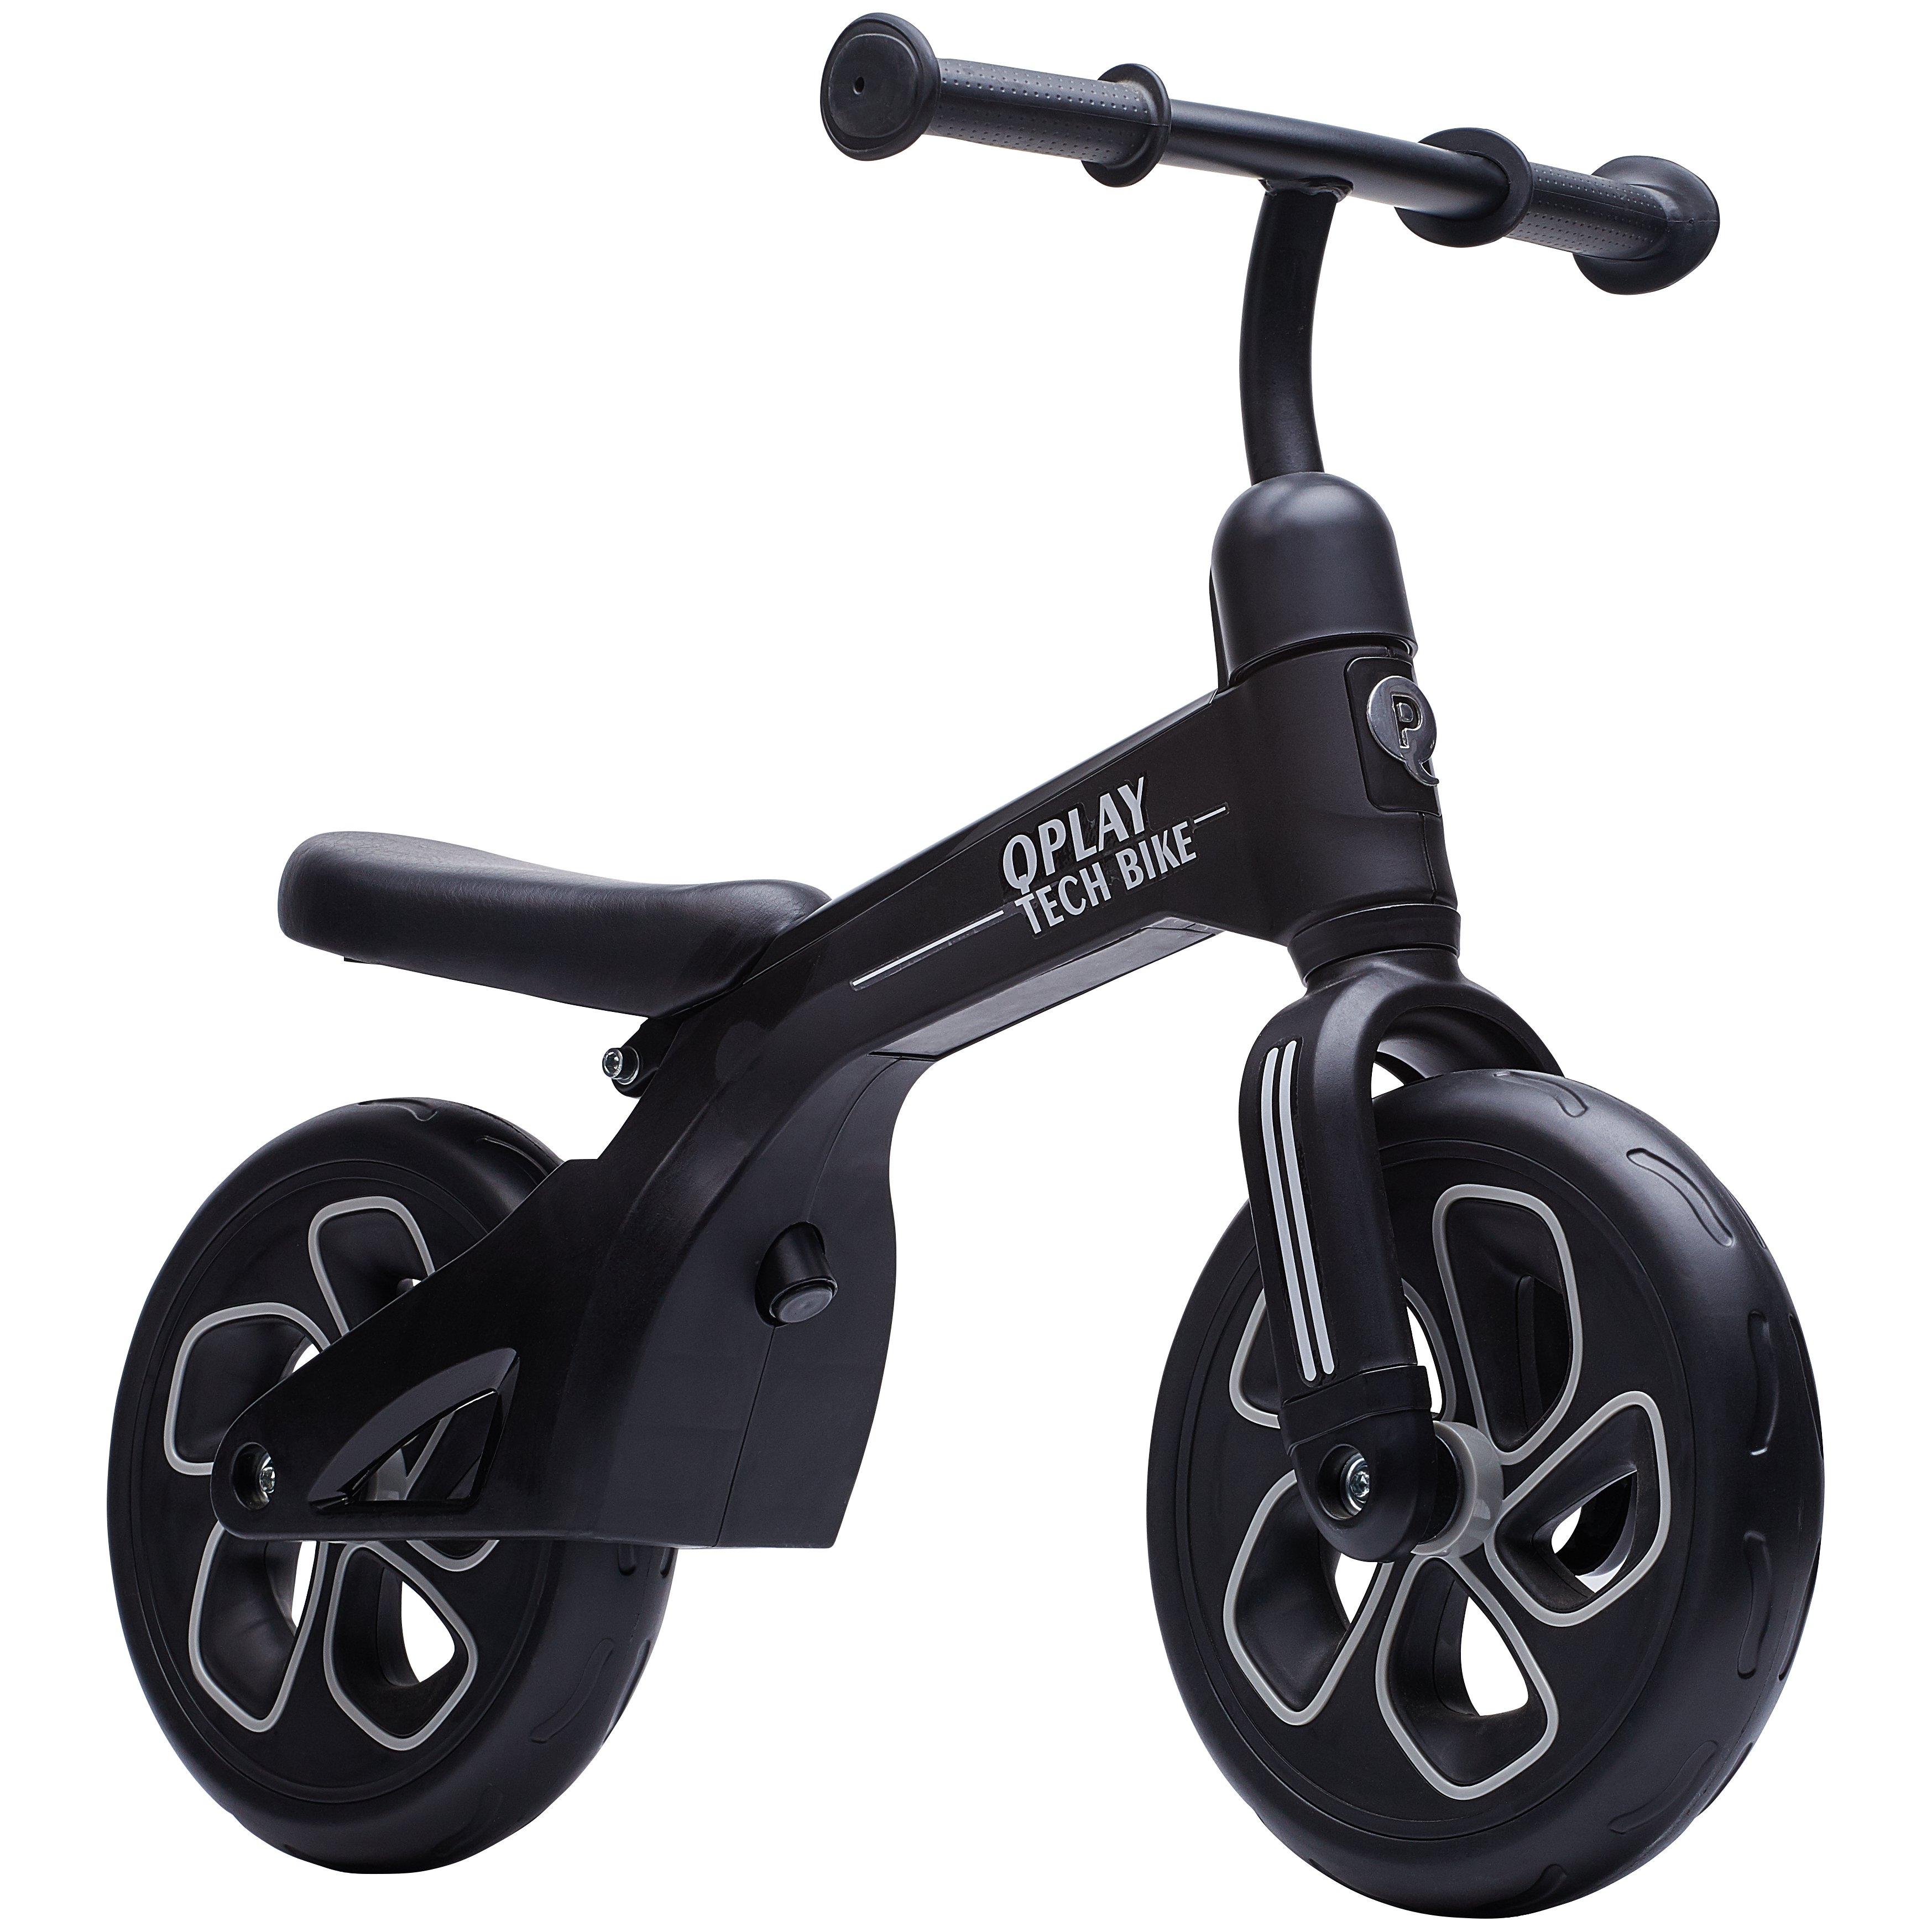 Біговел дитячий Qplay Tech Air, чорний (QP-Bike-001Black) - фото 1